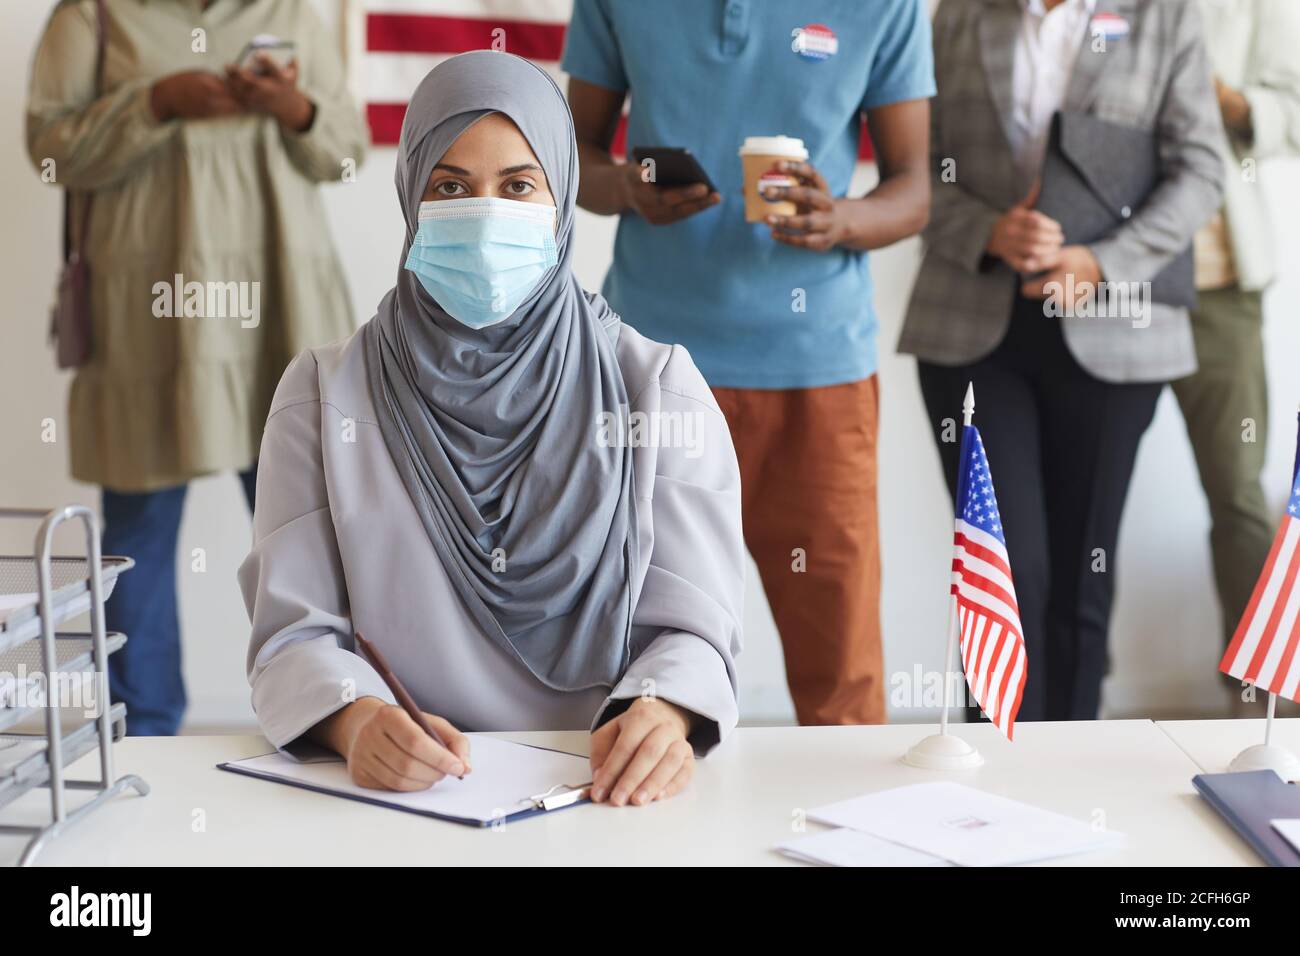 Grupo multiétnico de personas de pie en fila y usando máscaras en la mesa electoral el día de las elecciones, se centran en la joven árabe mirando la cámara mientras se registra para votar, copiar espacio Foto de stock